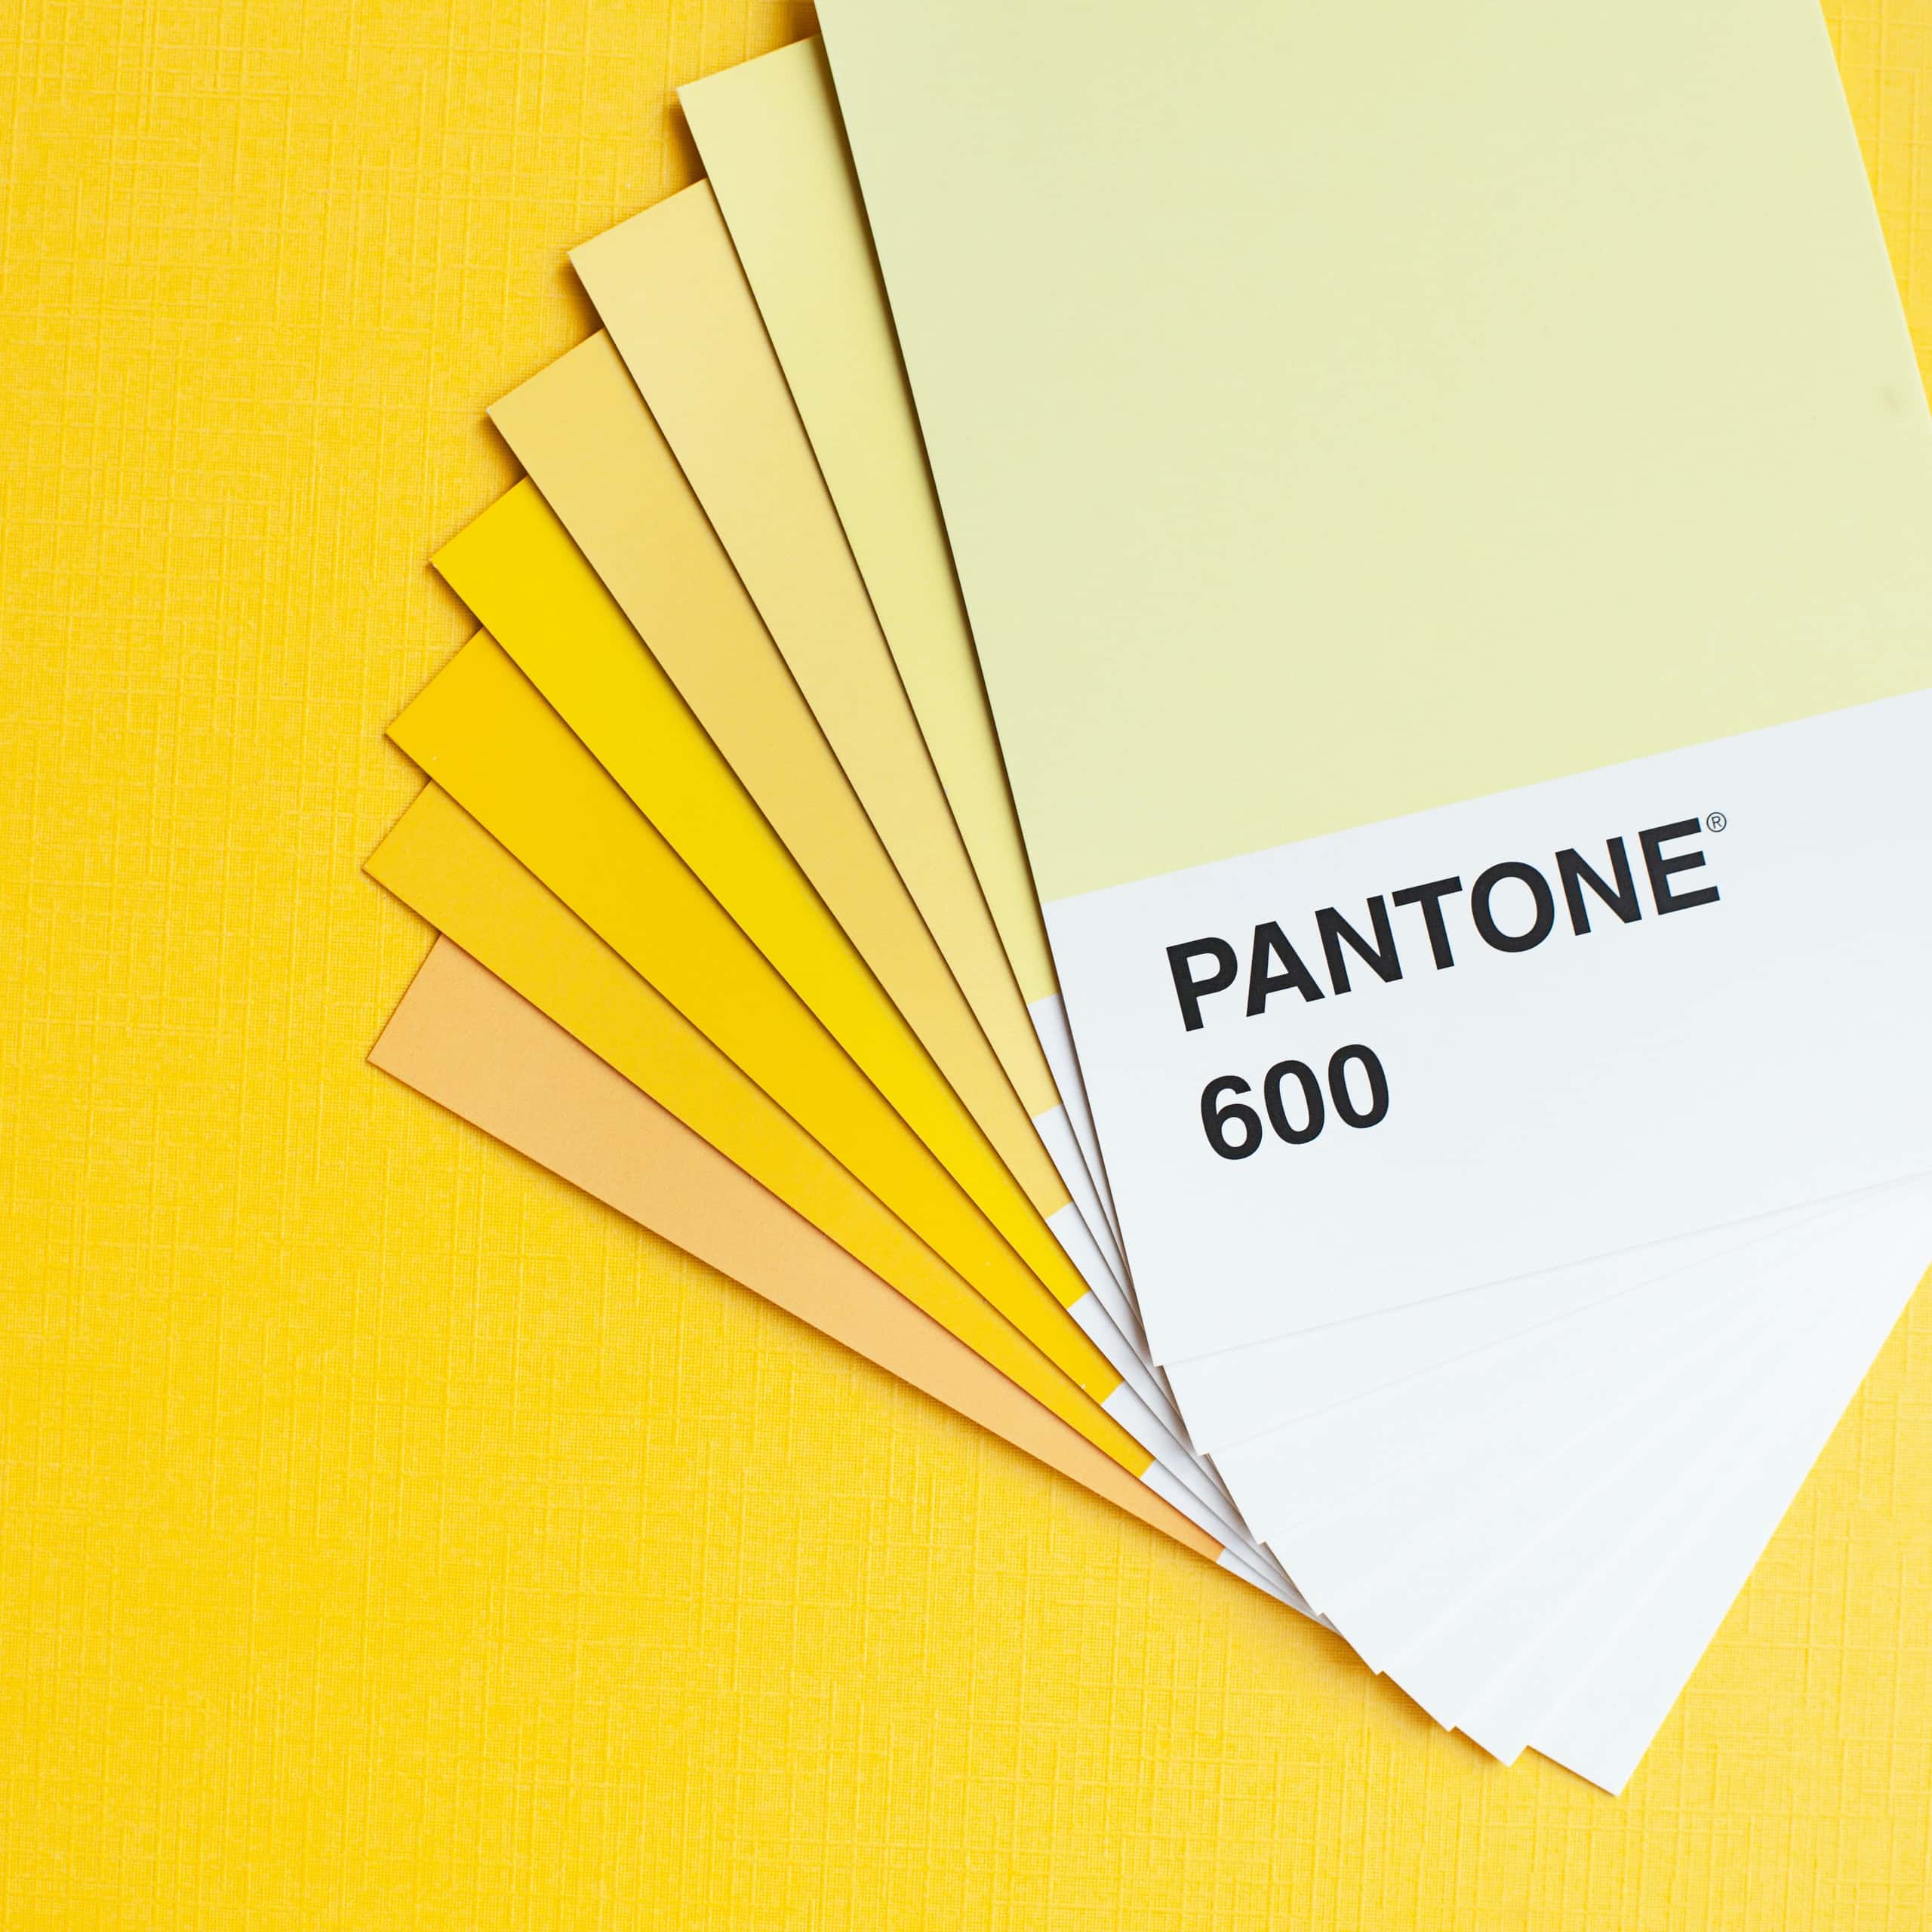 Pantone 600